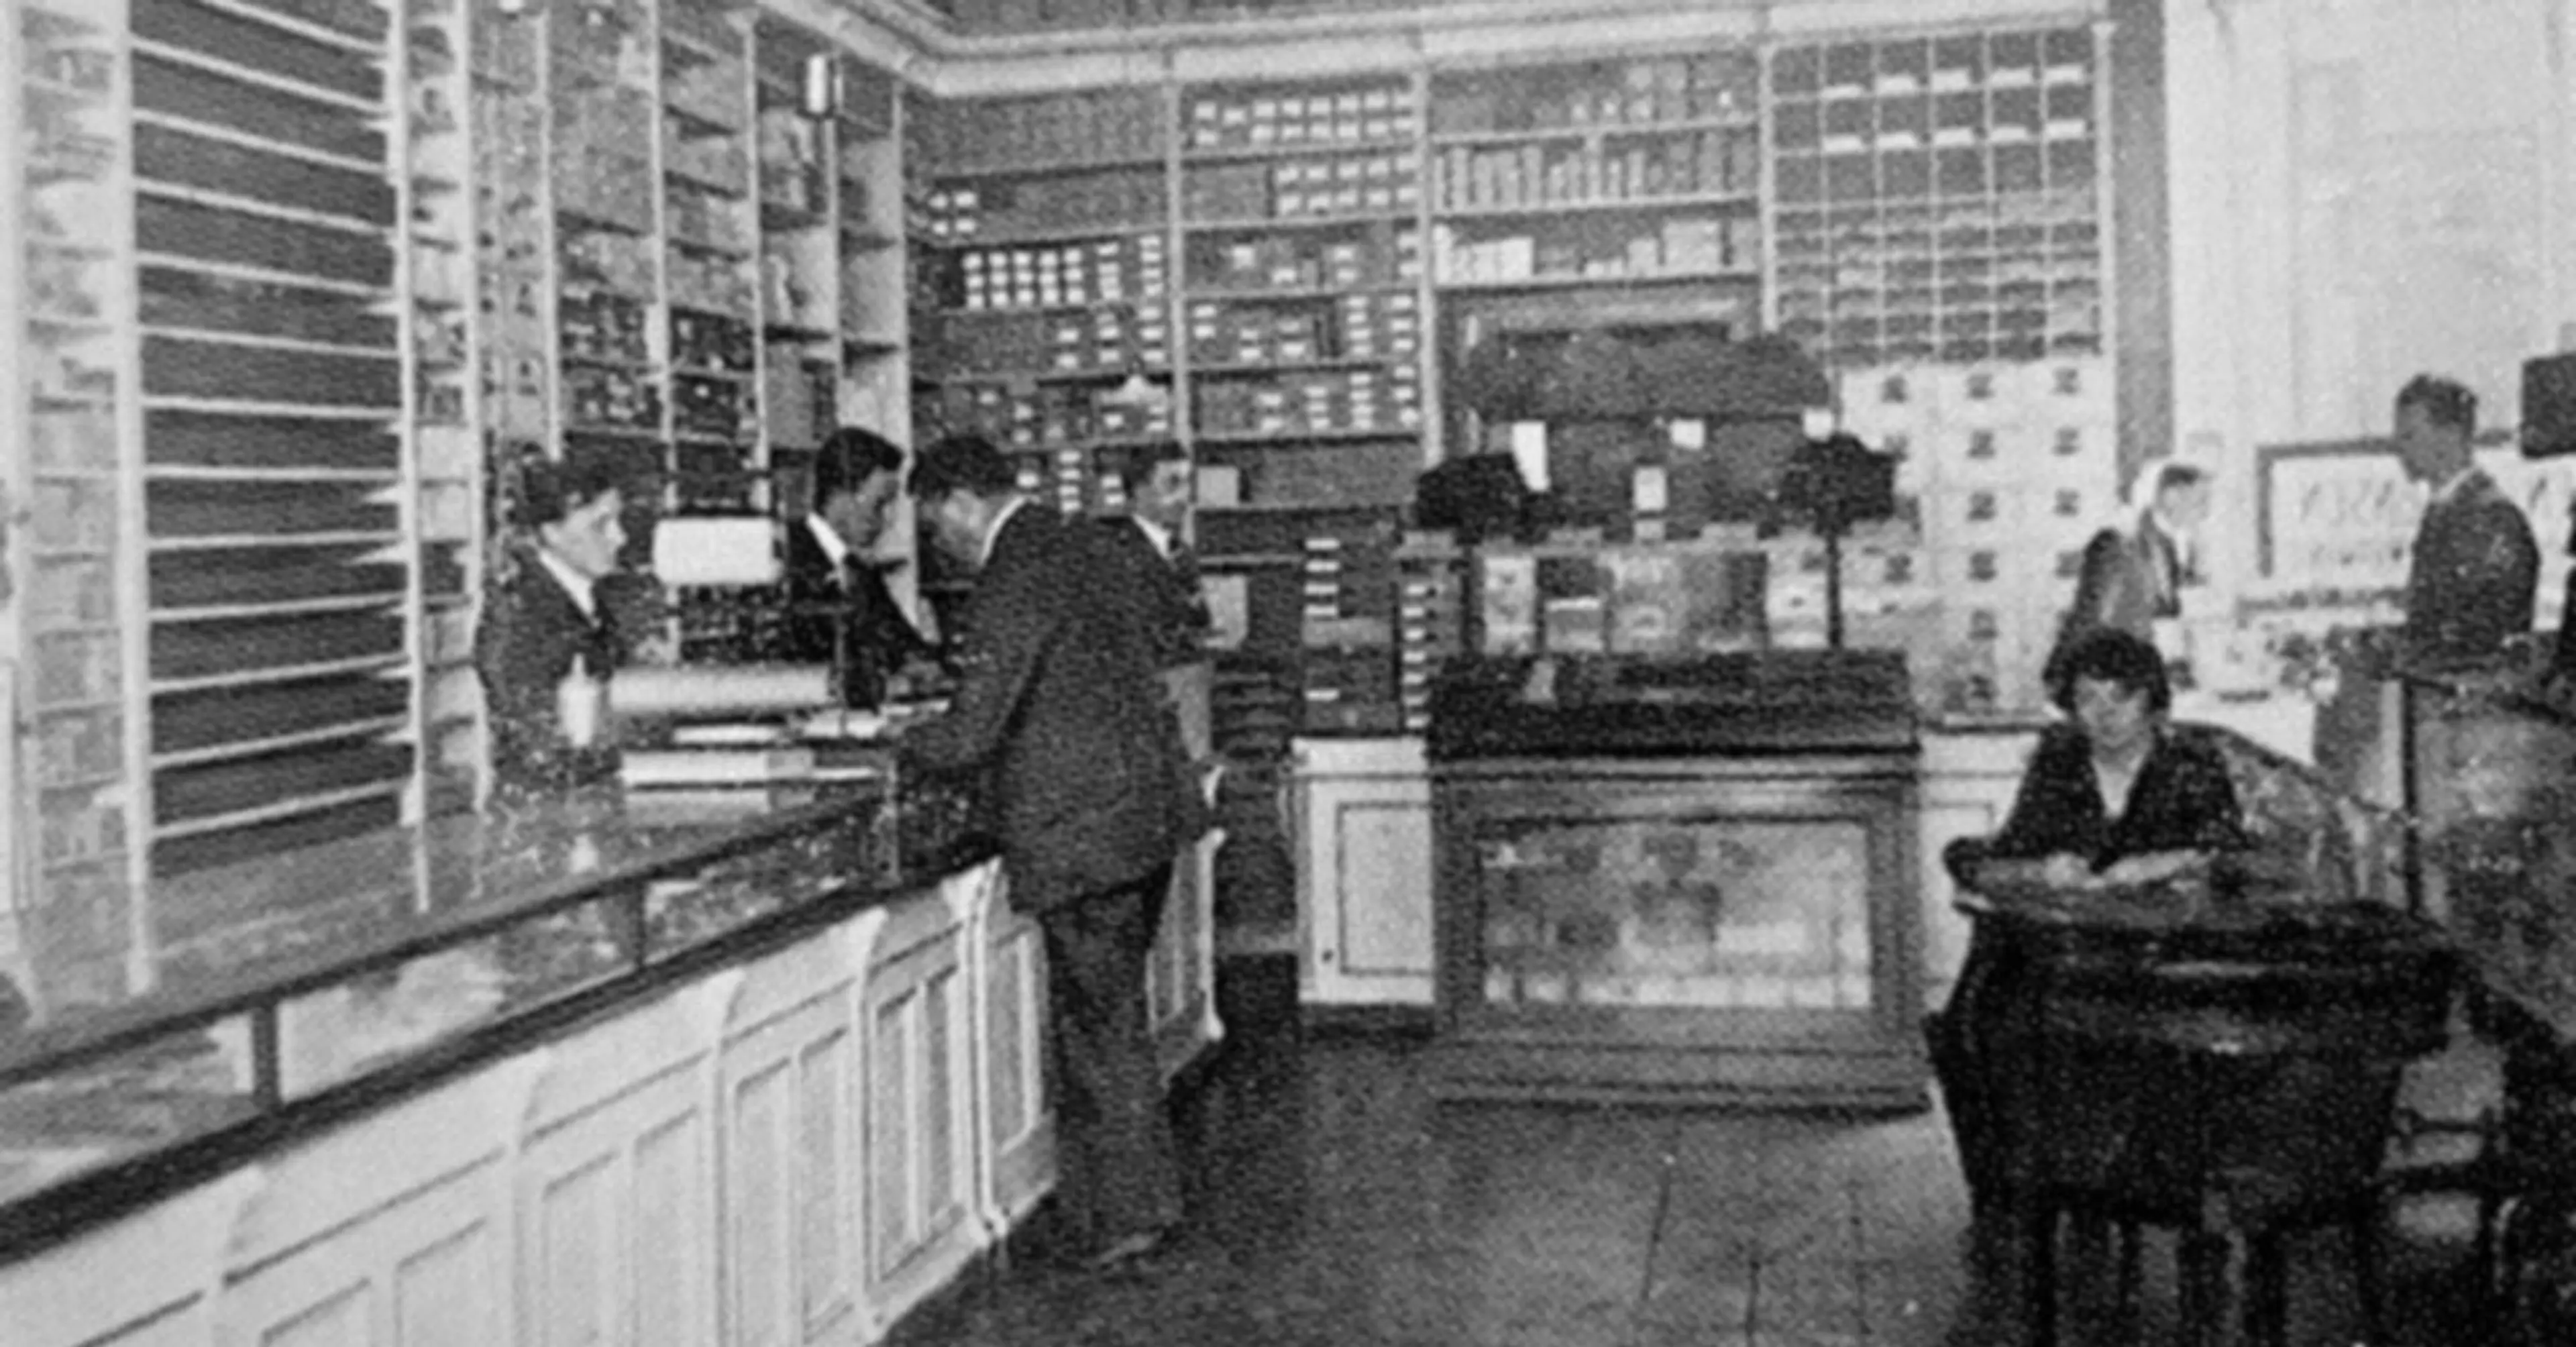 Wittusen & Jensens butikk i 1922